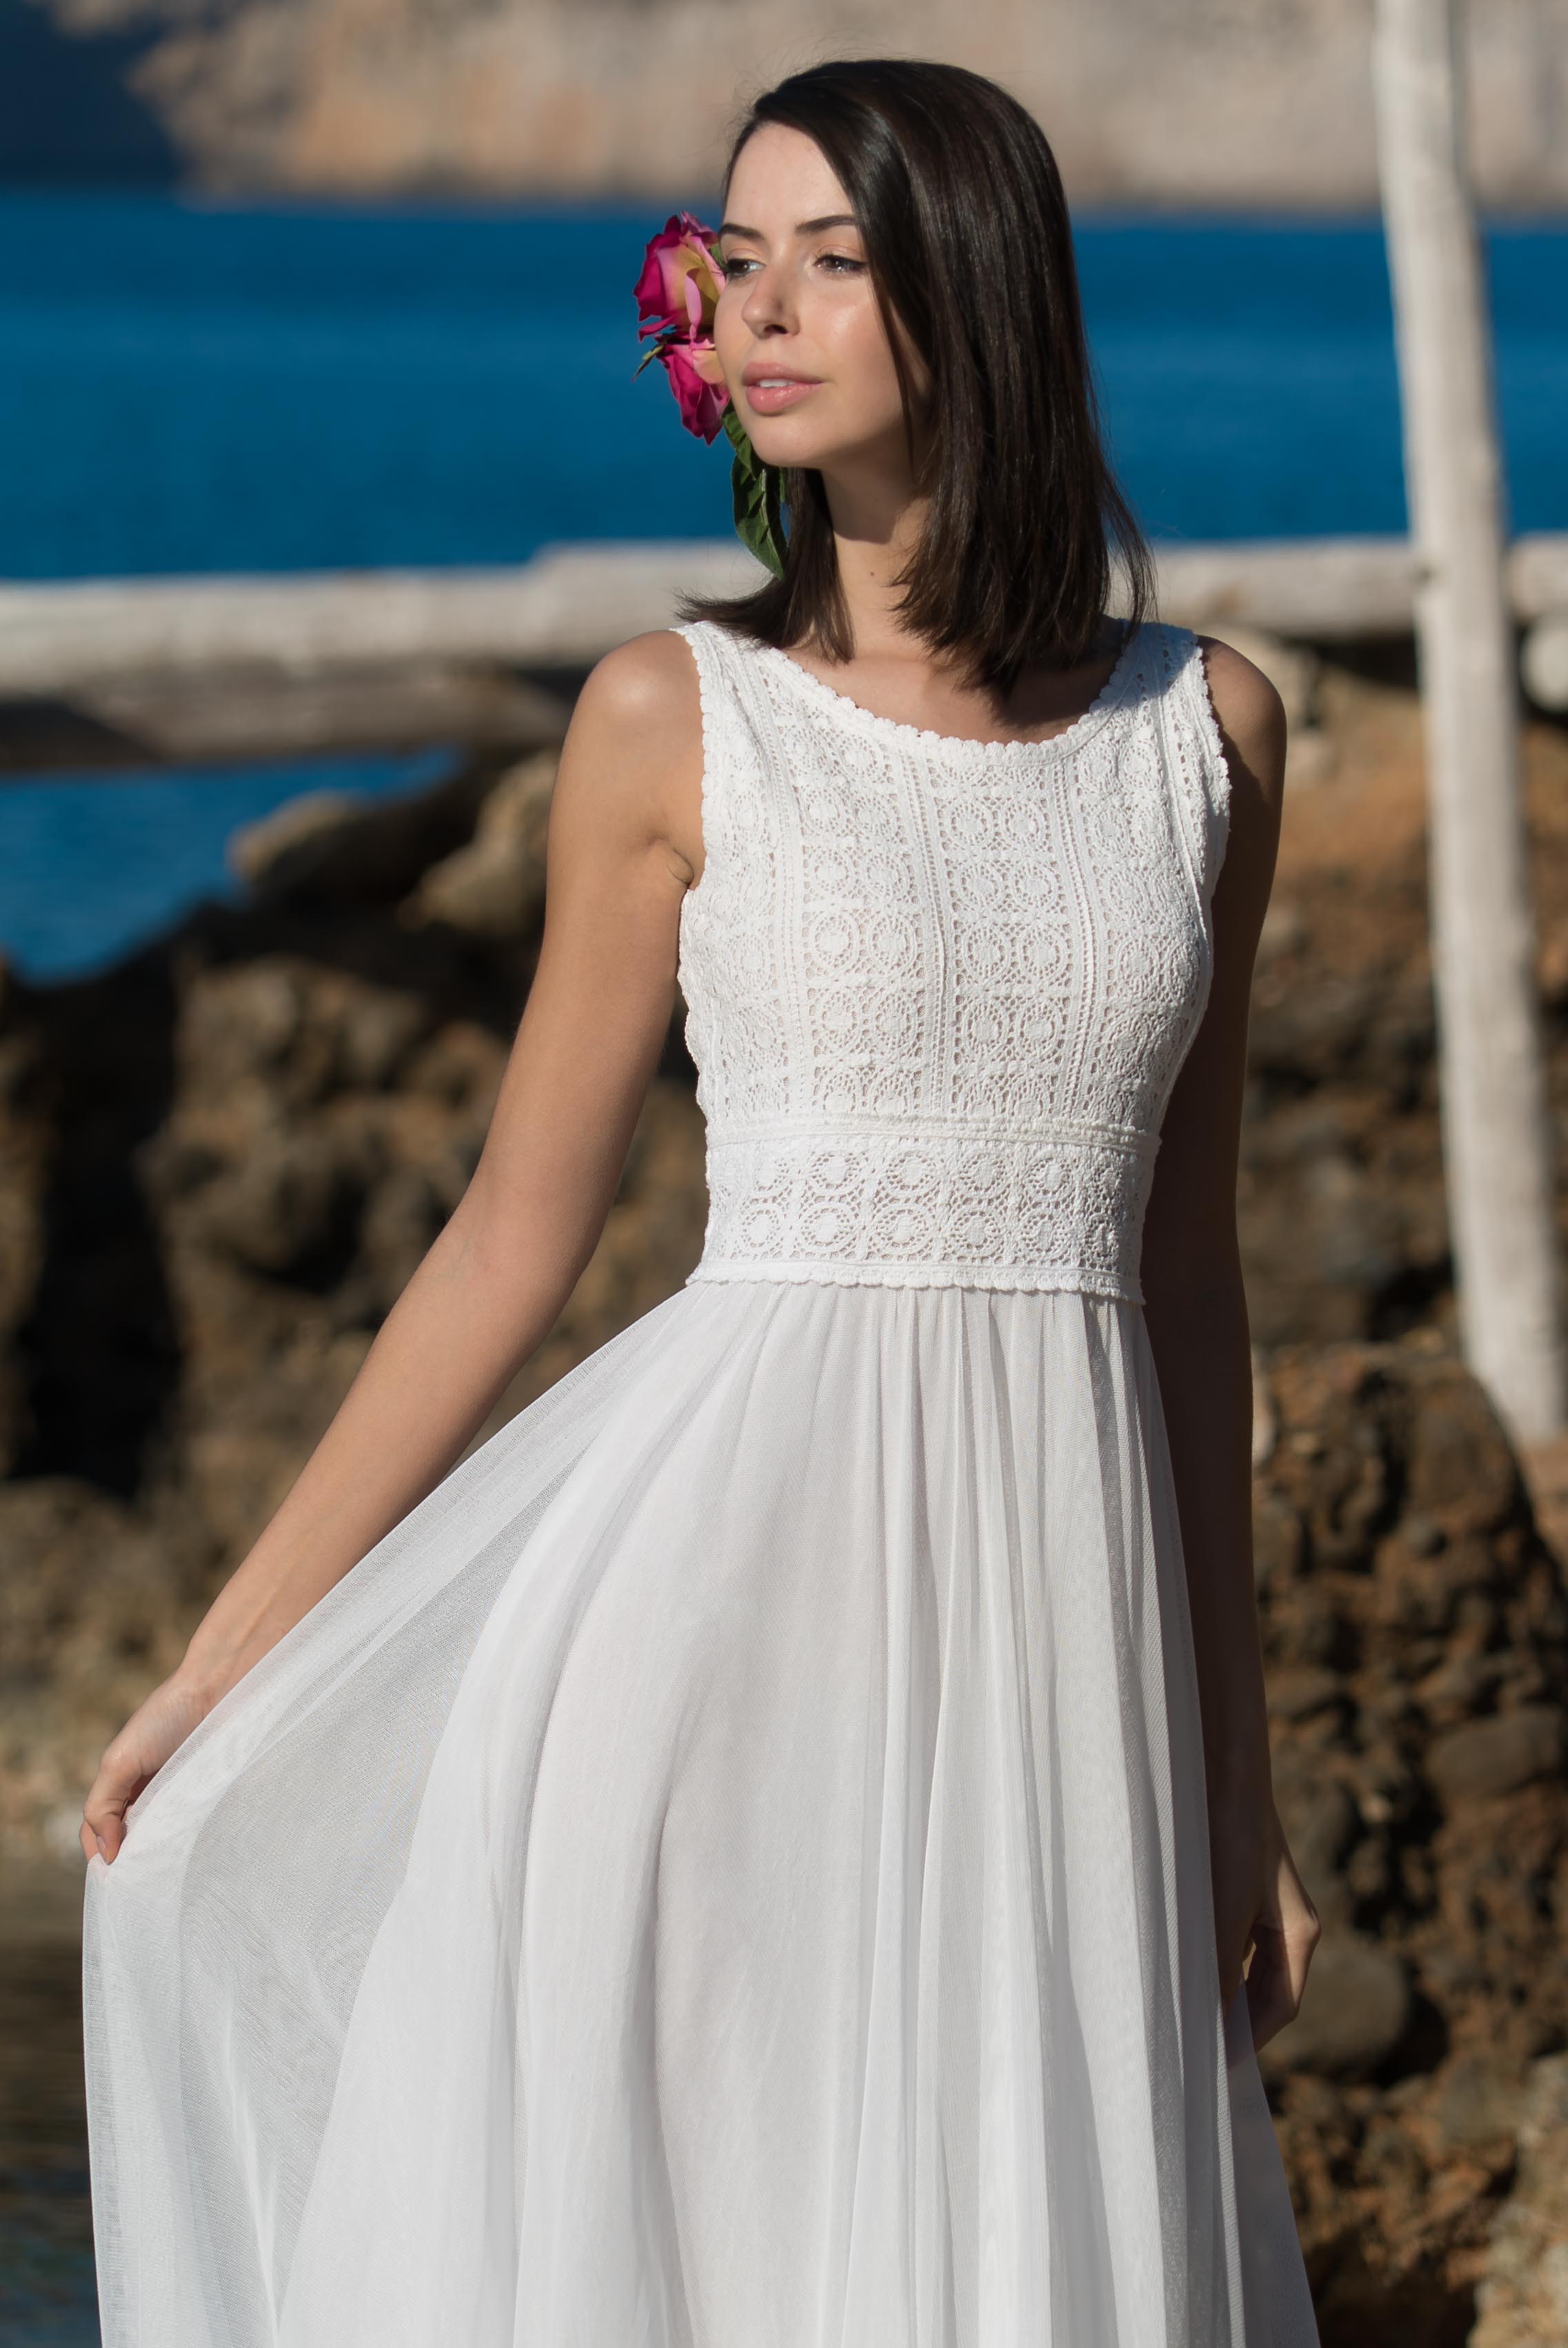 Vestido blanco | Vestidos blancos para eventos y bodas